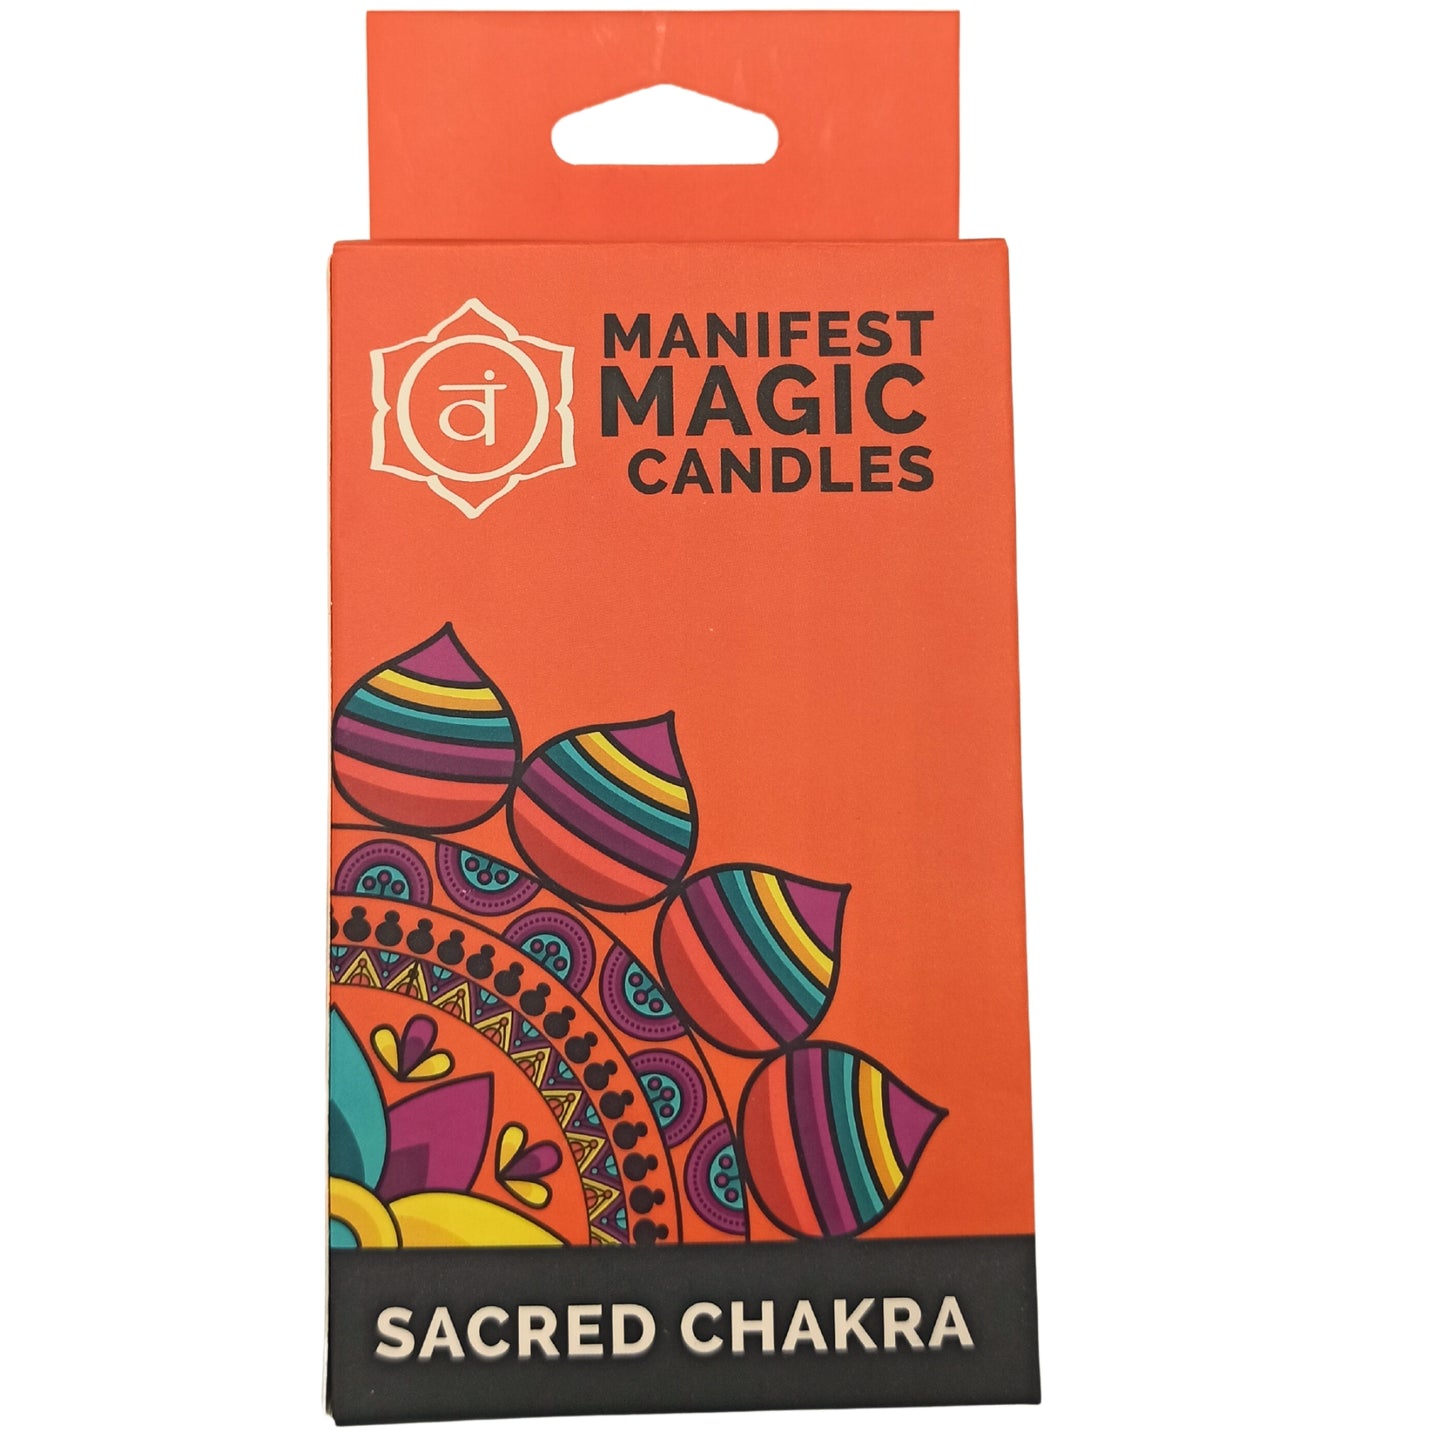 Manifest Magic Candles (pack of 12) - Orange - Sacred Chakra